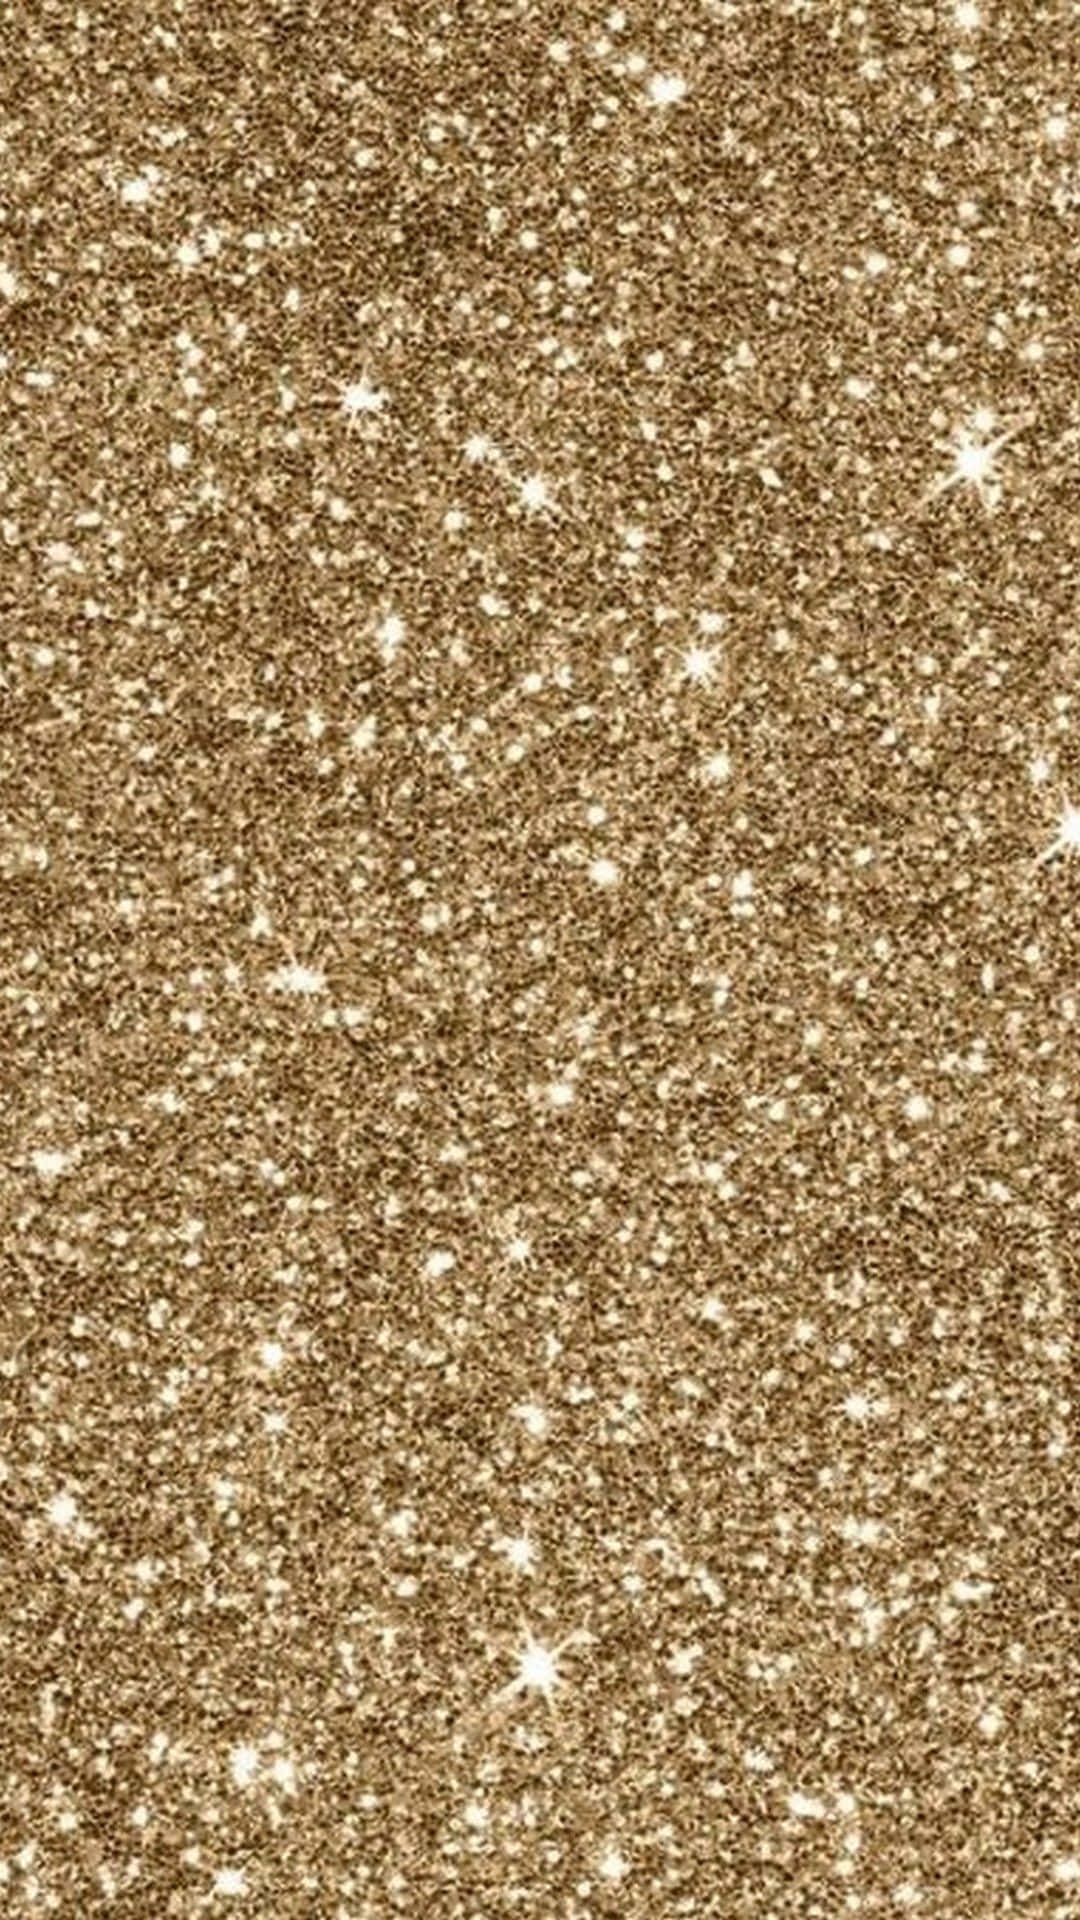 Imagenbrillante De Glitter Dorado En Coruscant.